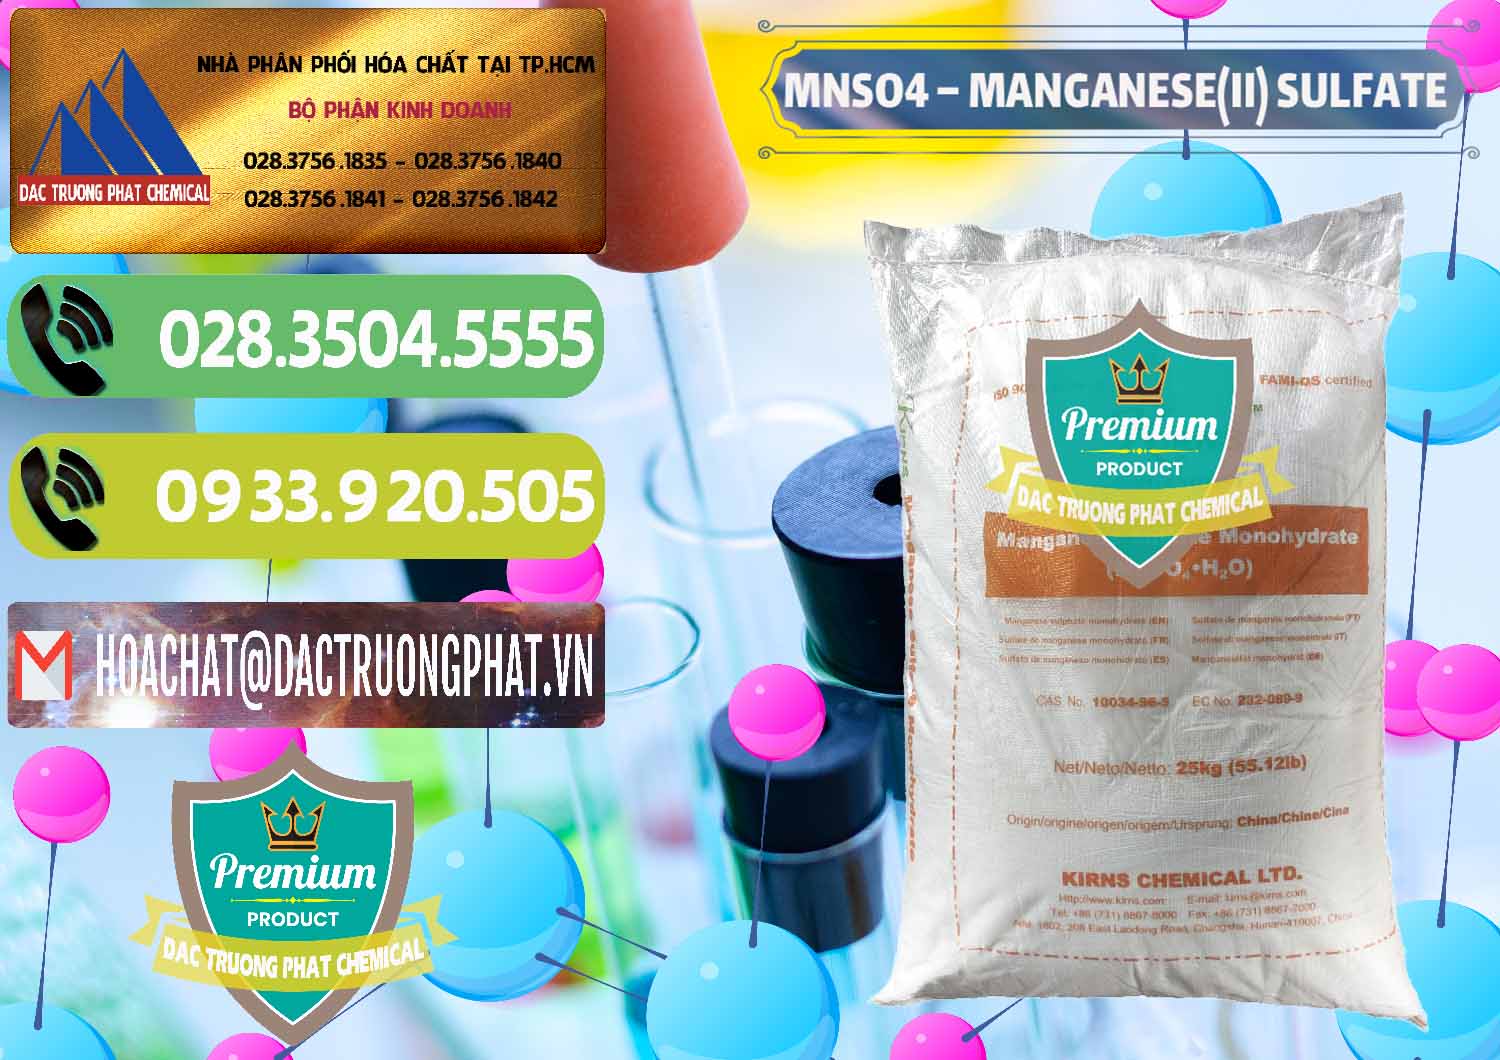 Nơi phân phối _ bán MNSO4 – Manganese (II) Sulfate Kirns Trung Quốc China - 0095 - Cty chuyên bán và cung cấp hóa chất tại TP.HCM - hoachatmientay.vn